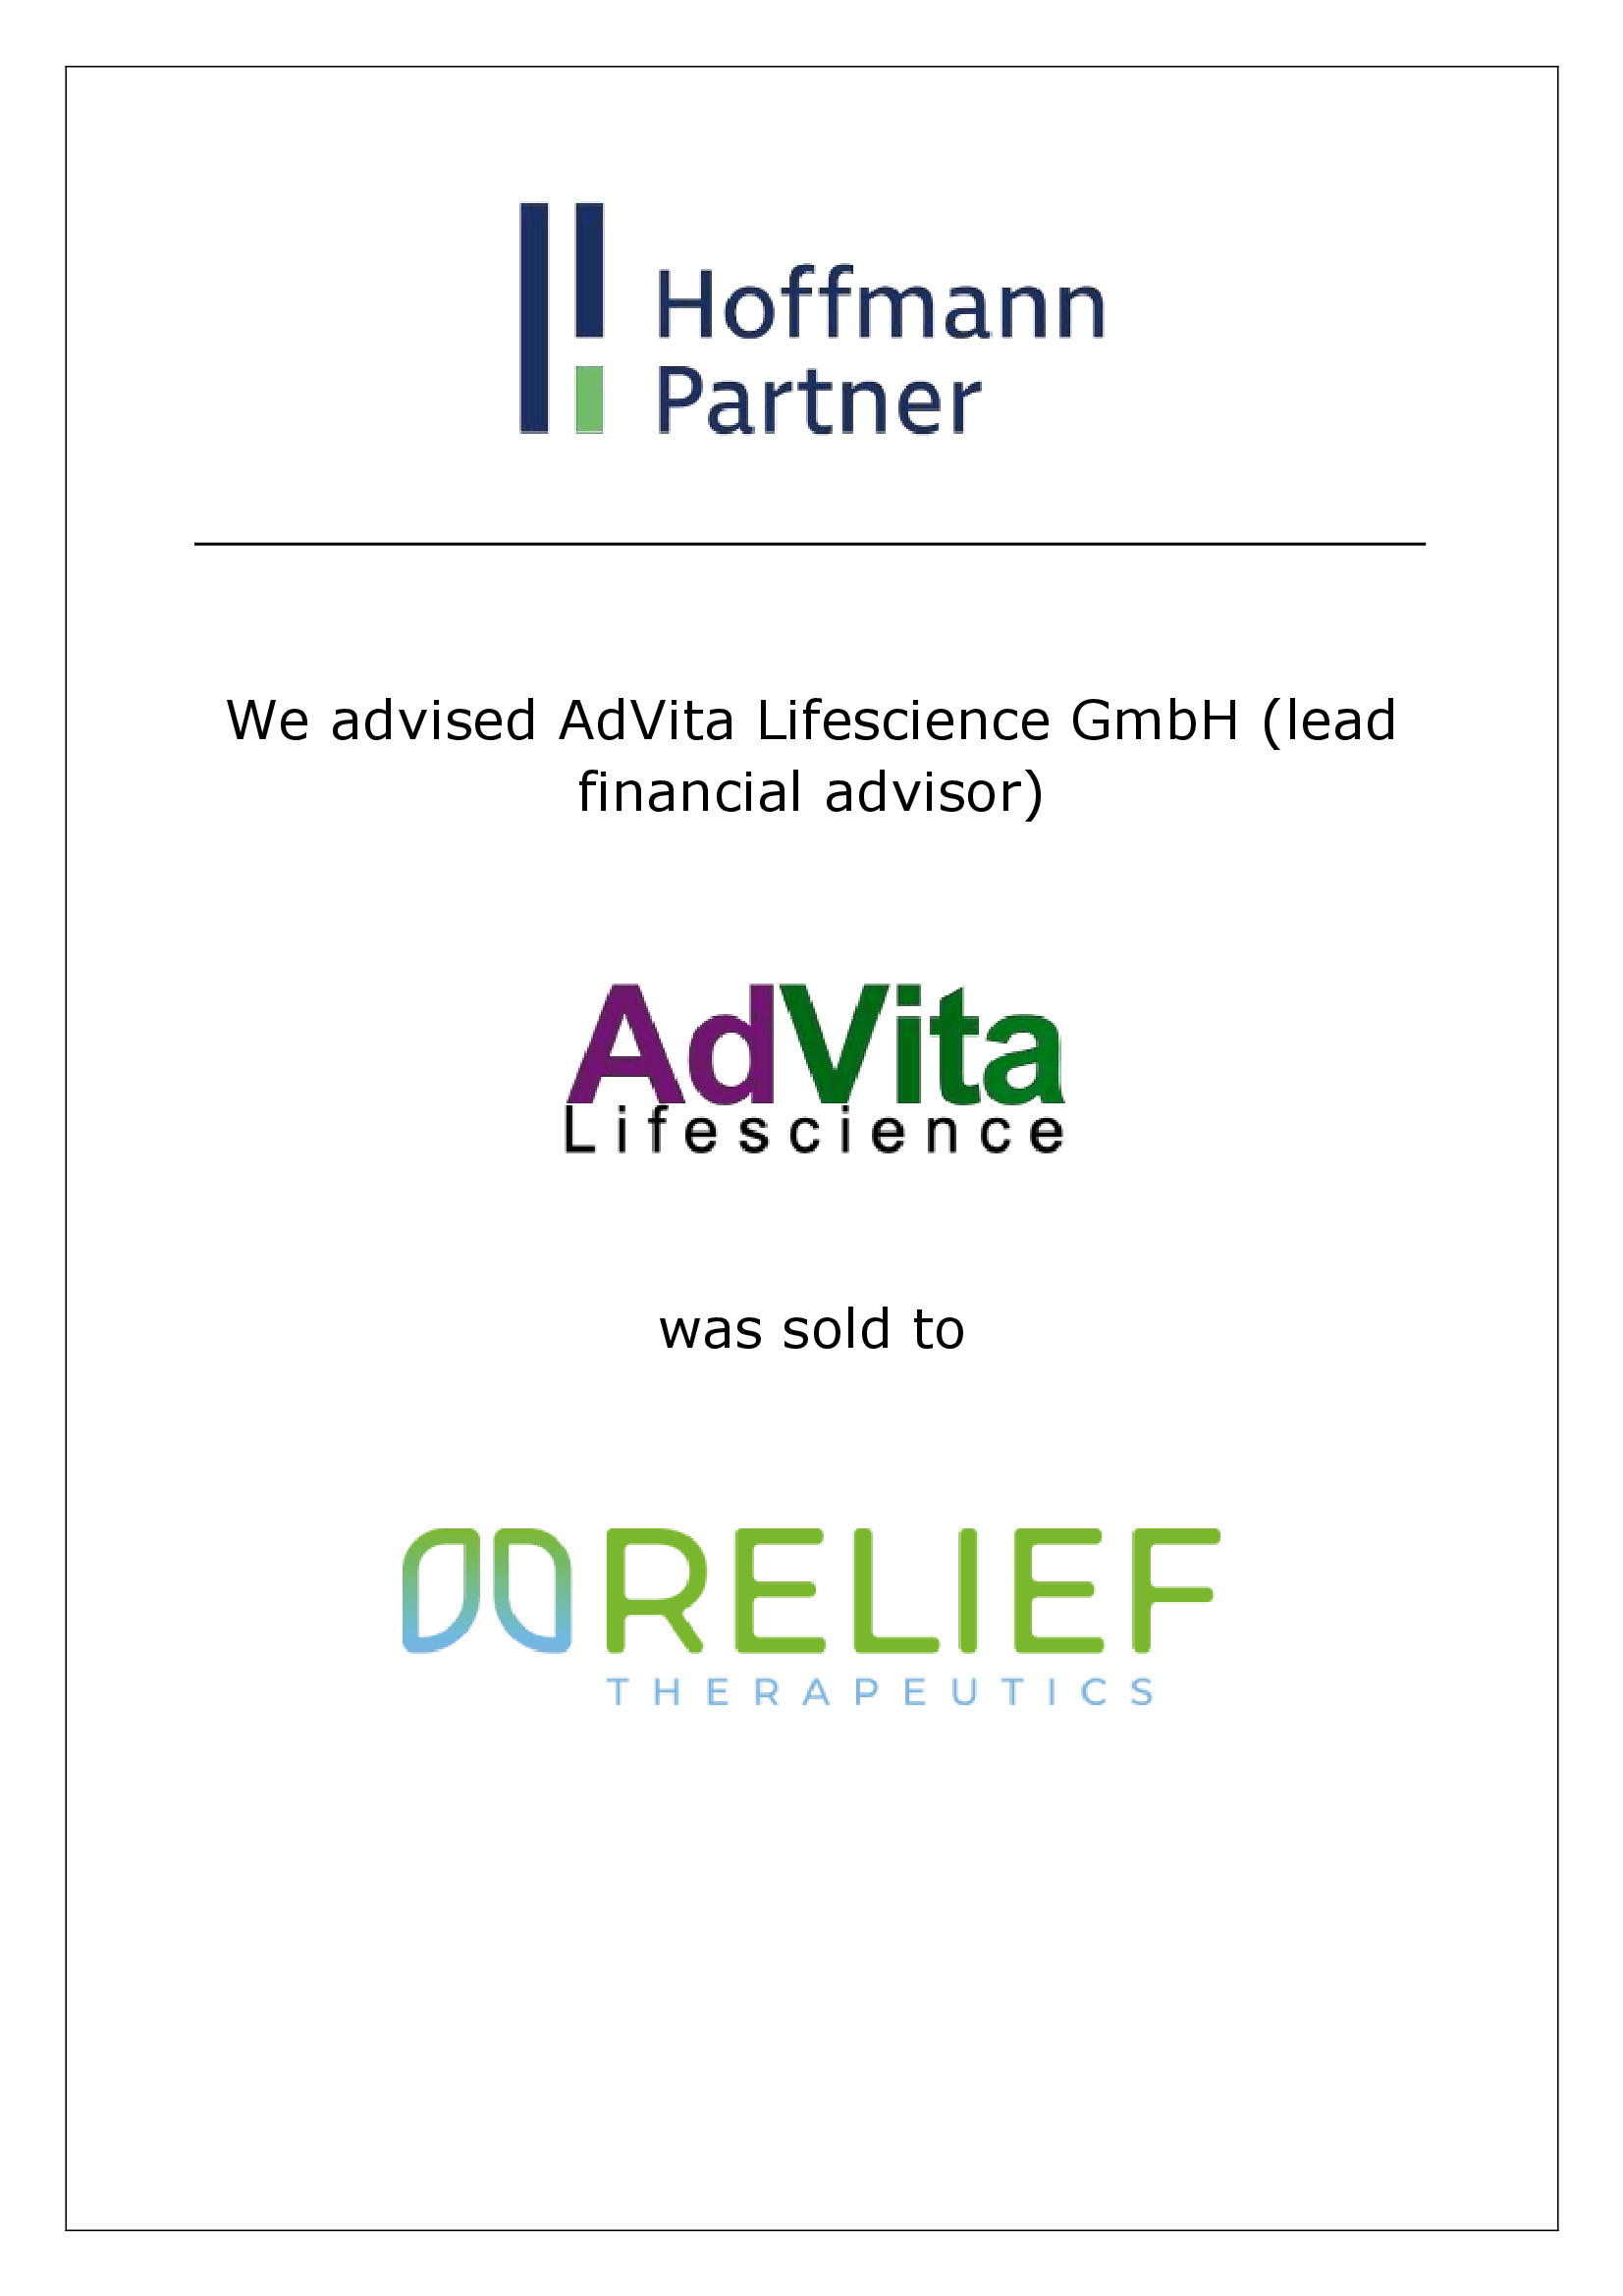 AdVita - Relief